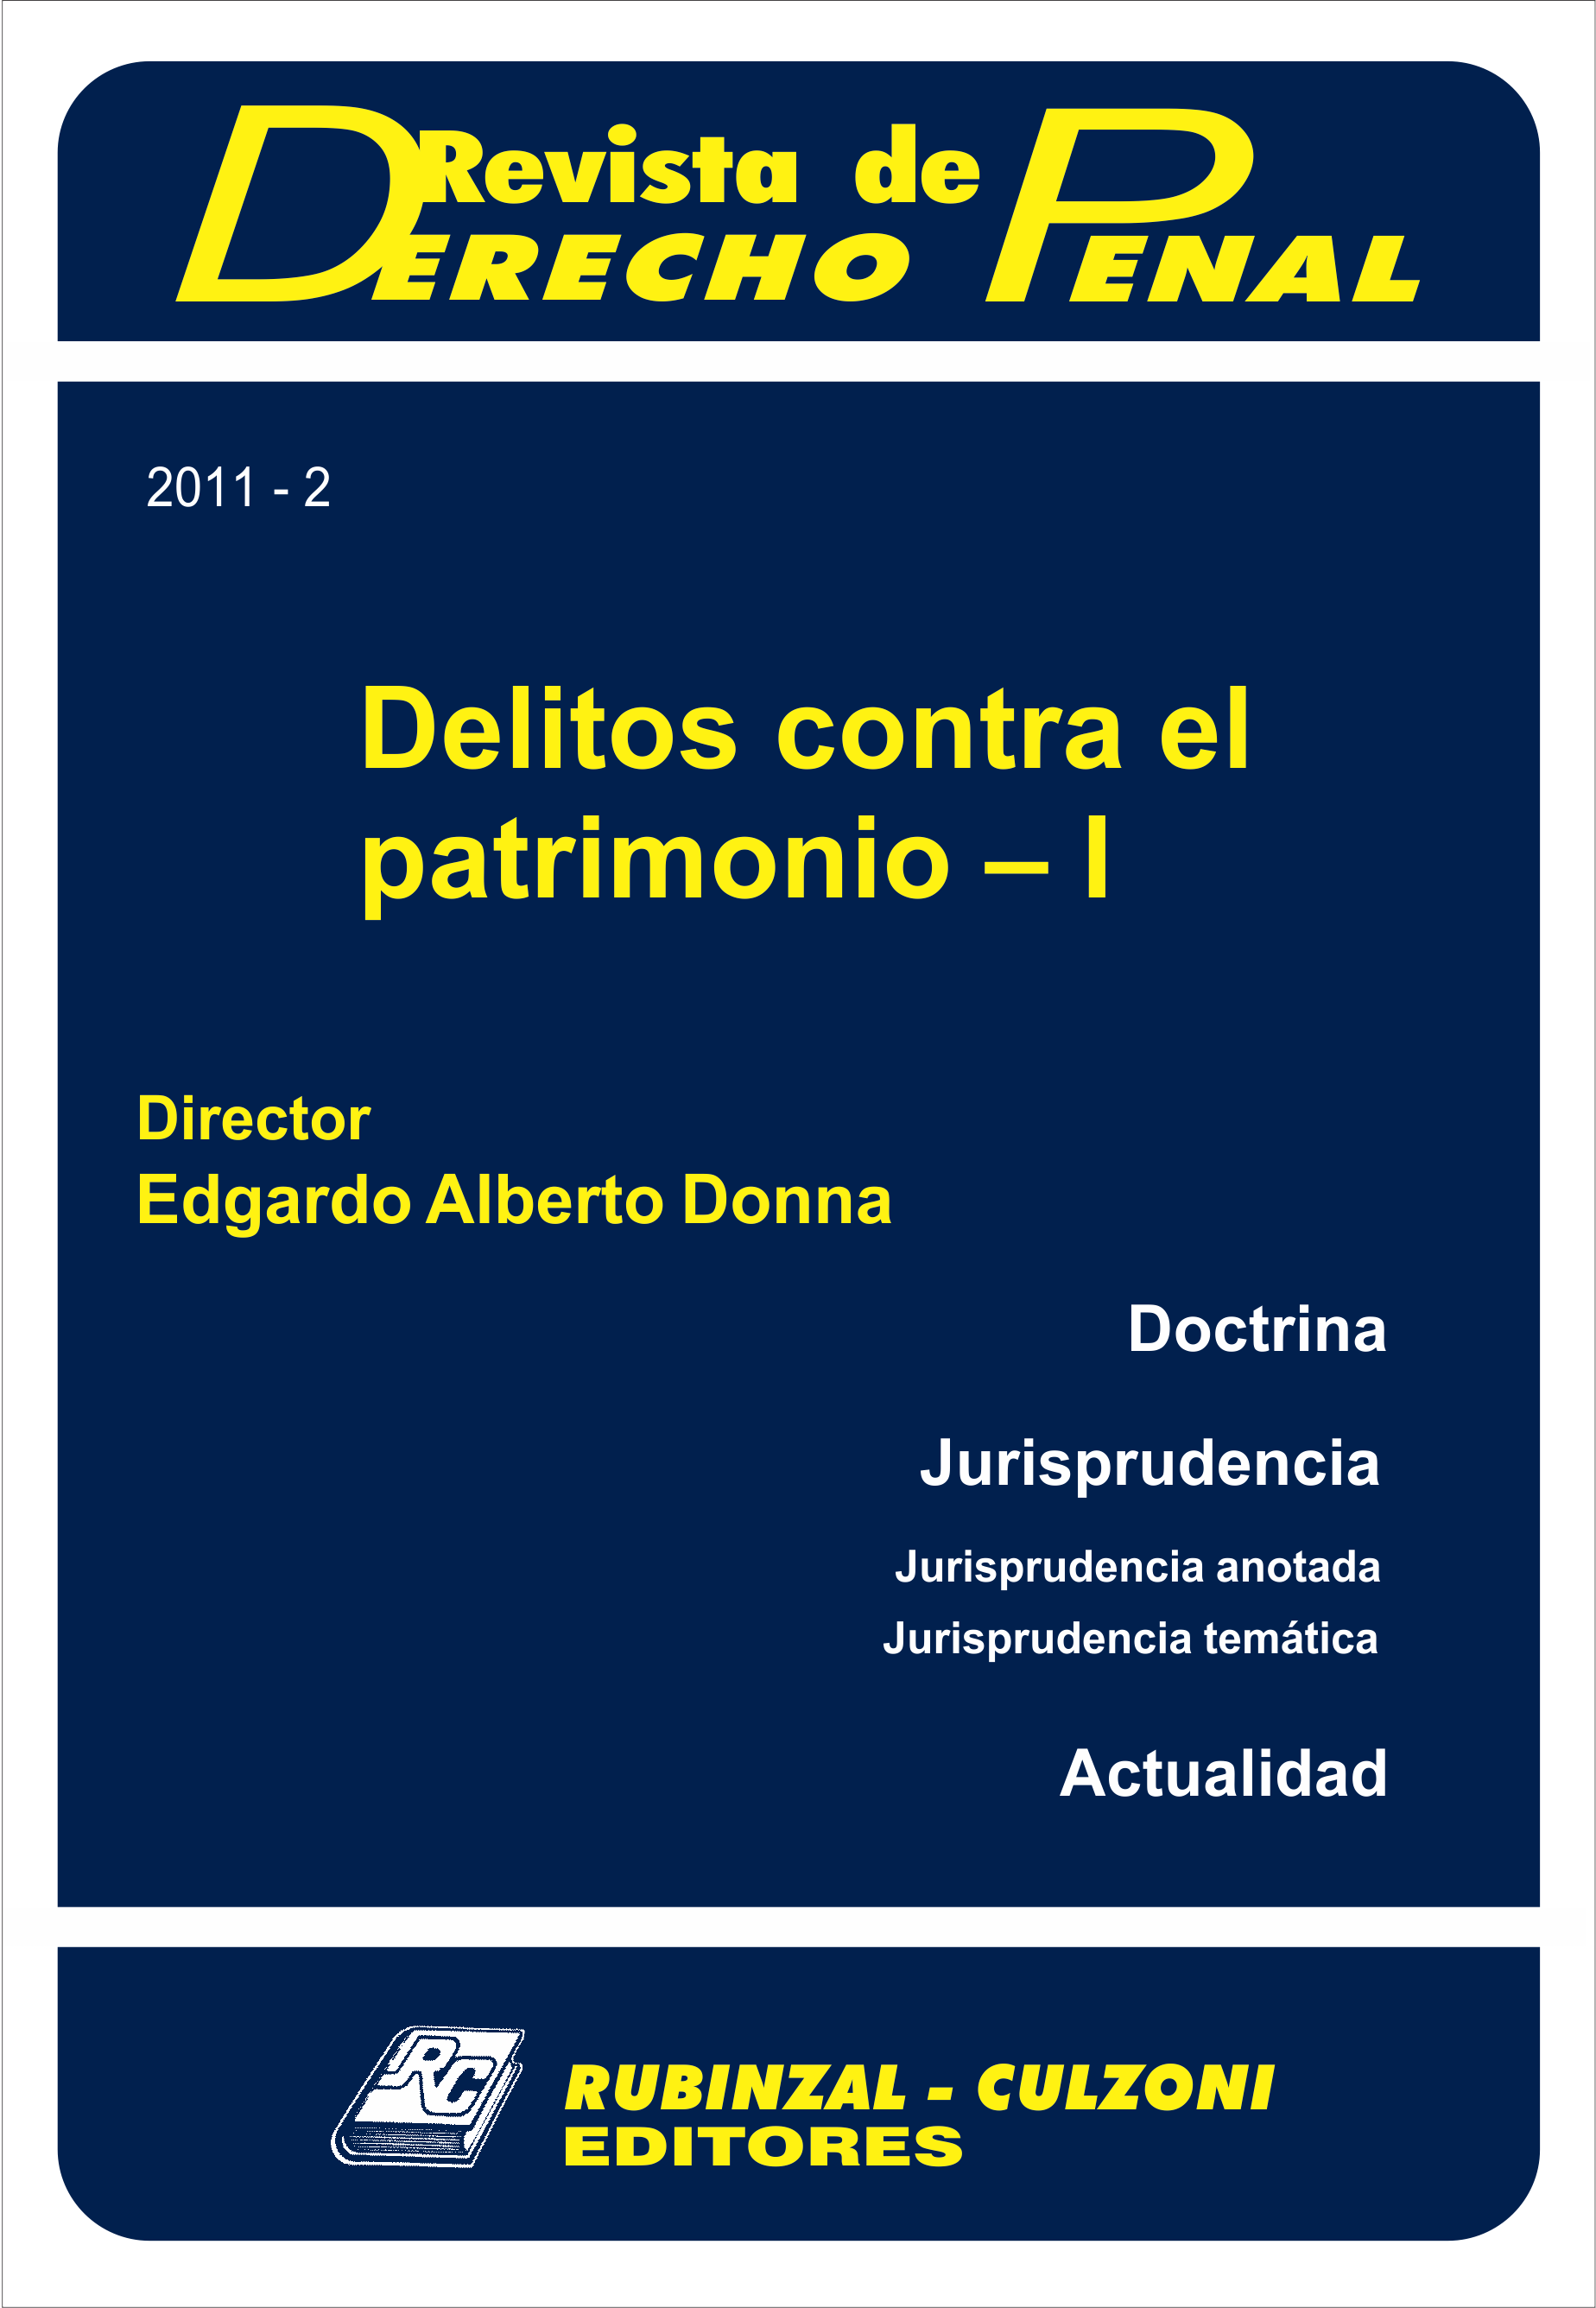 Revista de Derecho Penal - Delitos contra el patrimonio - I